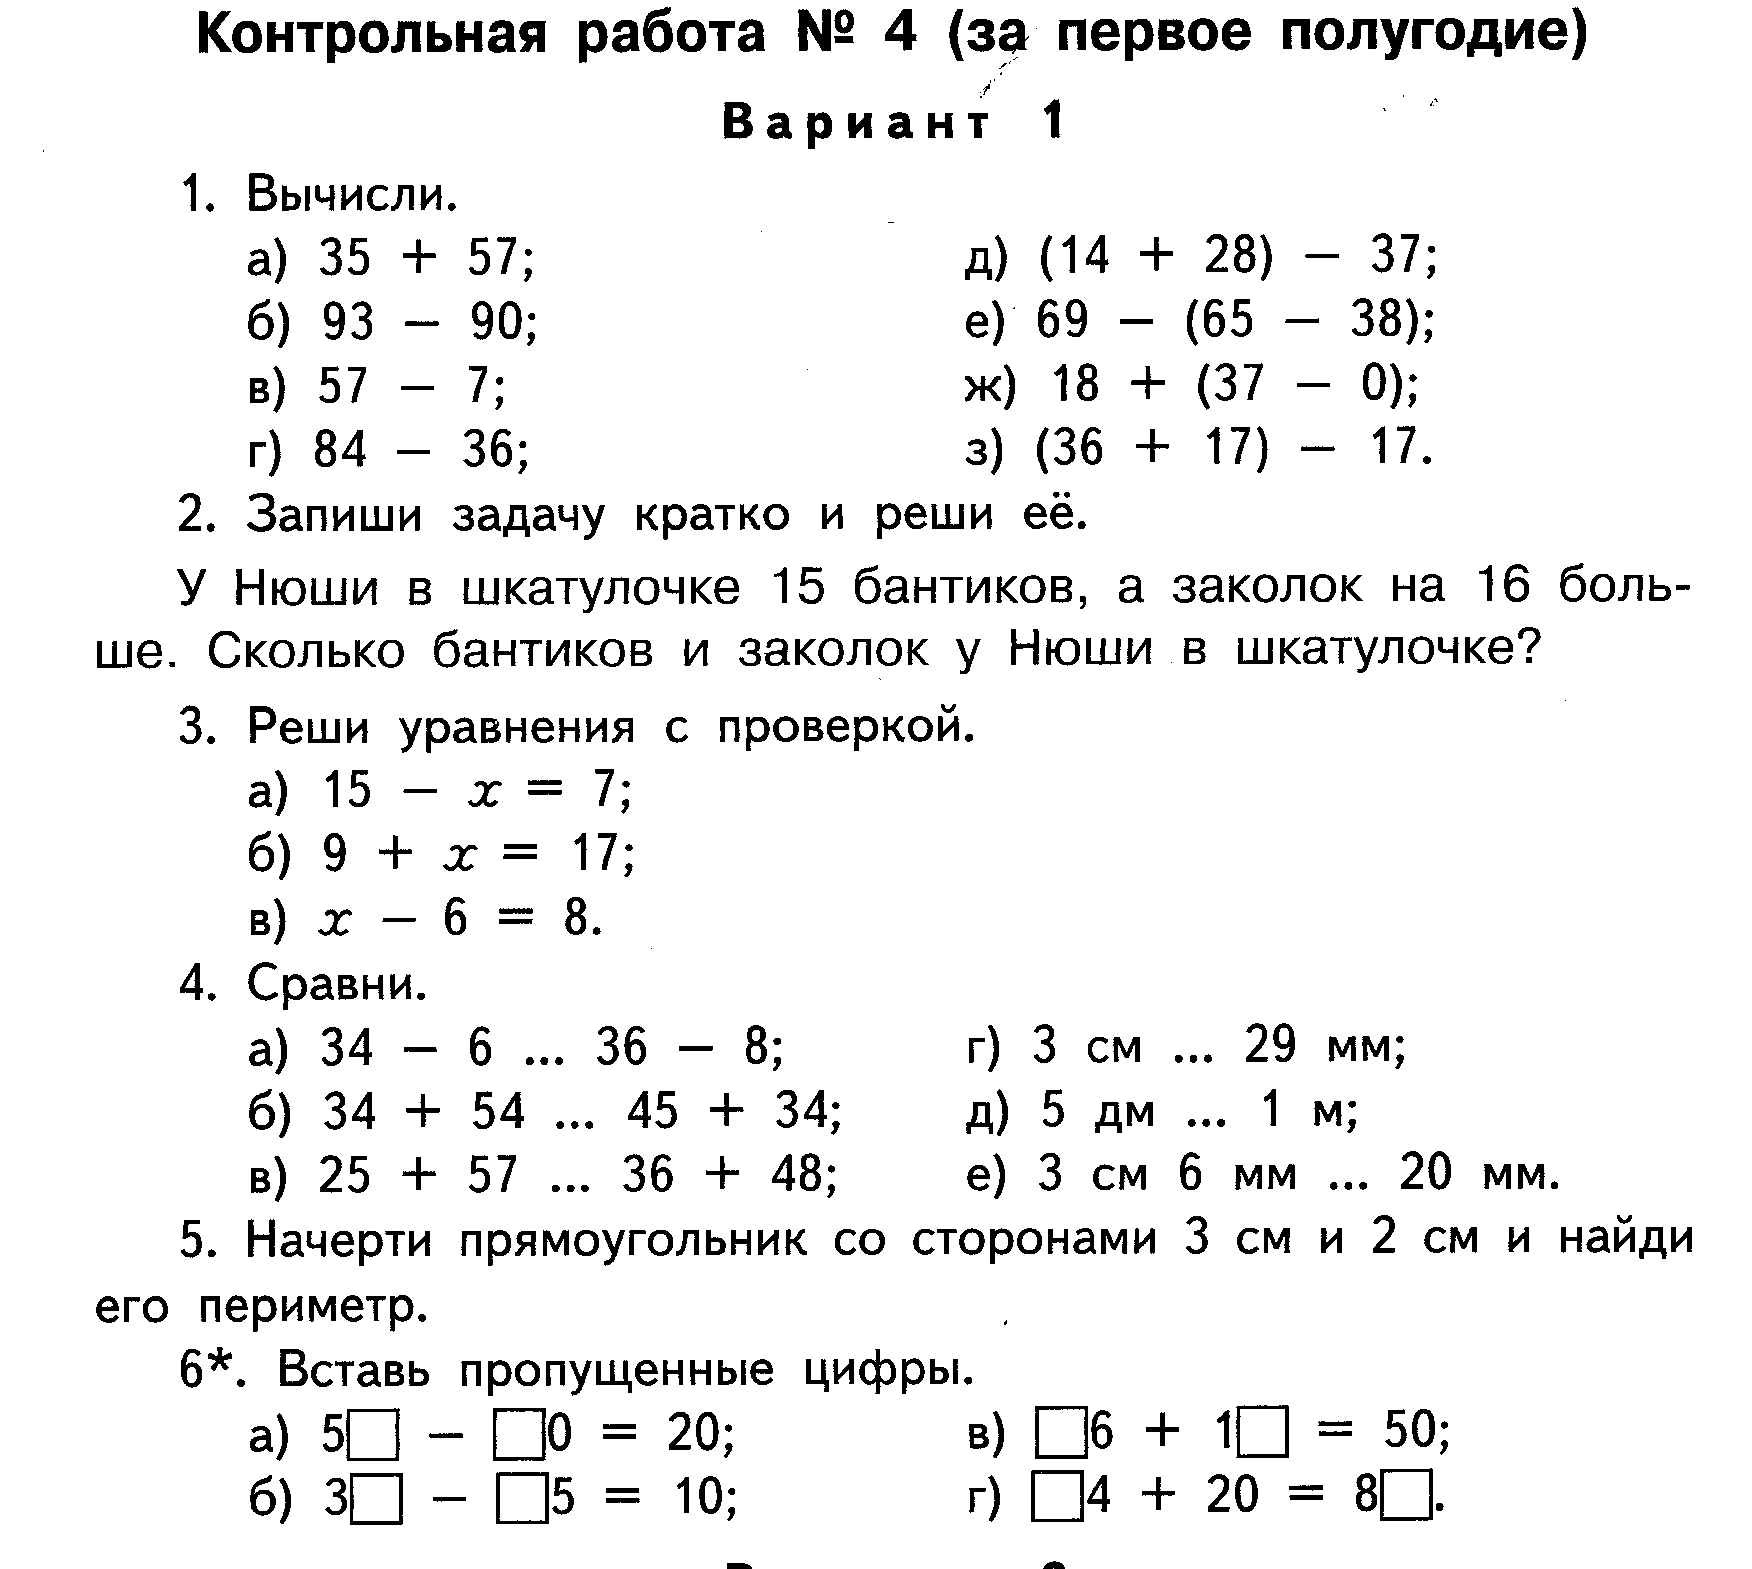 Контрольная работа по математике 2 класс 3 четверть школа России ФГОС